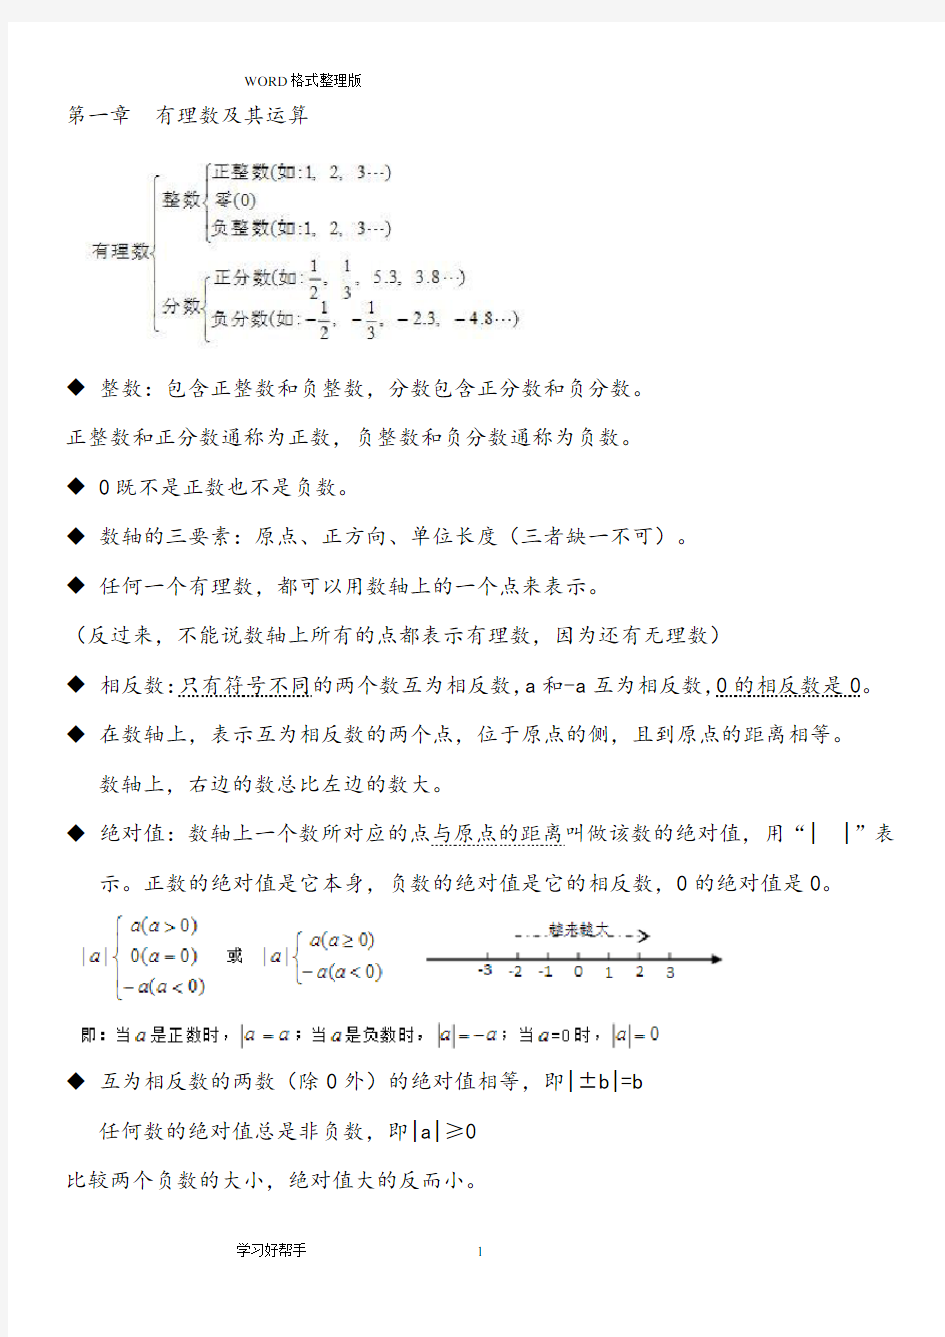 浙江七年级数学(上册)重要知识点归纳(2020年整理).pdf